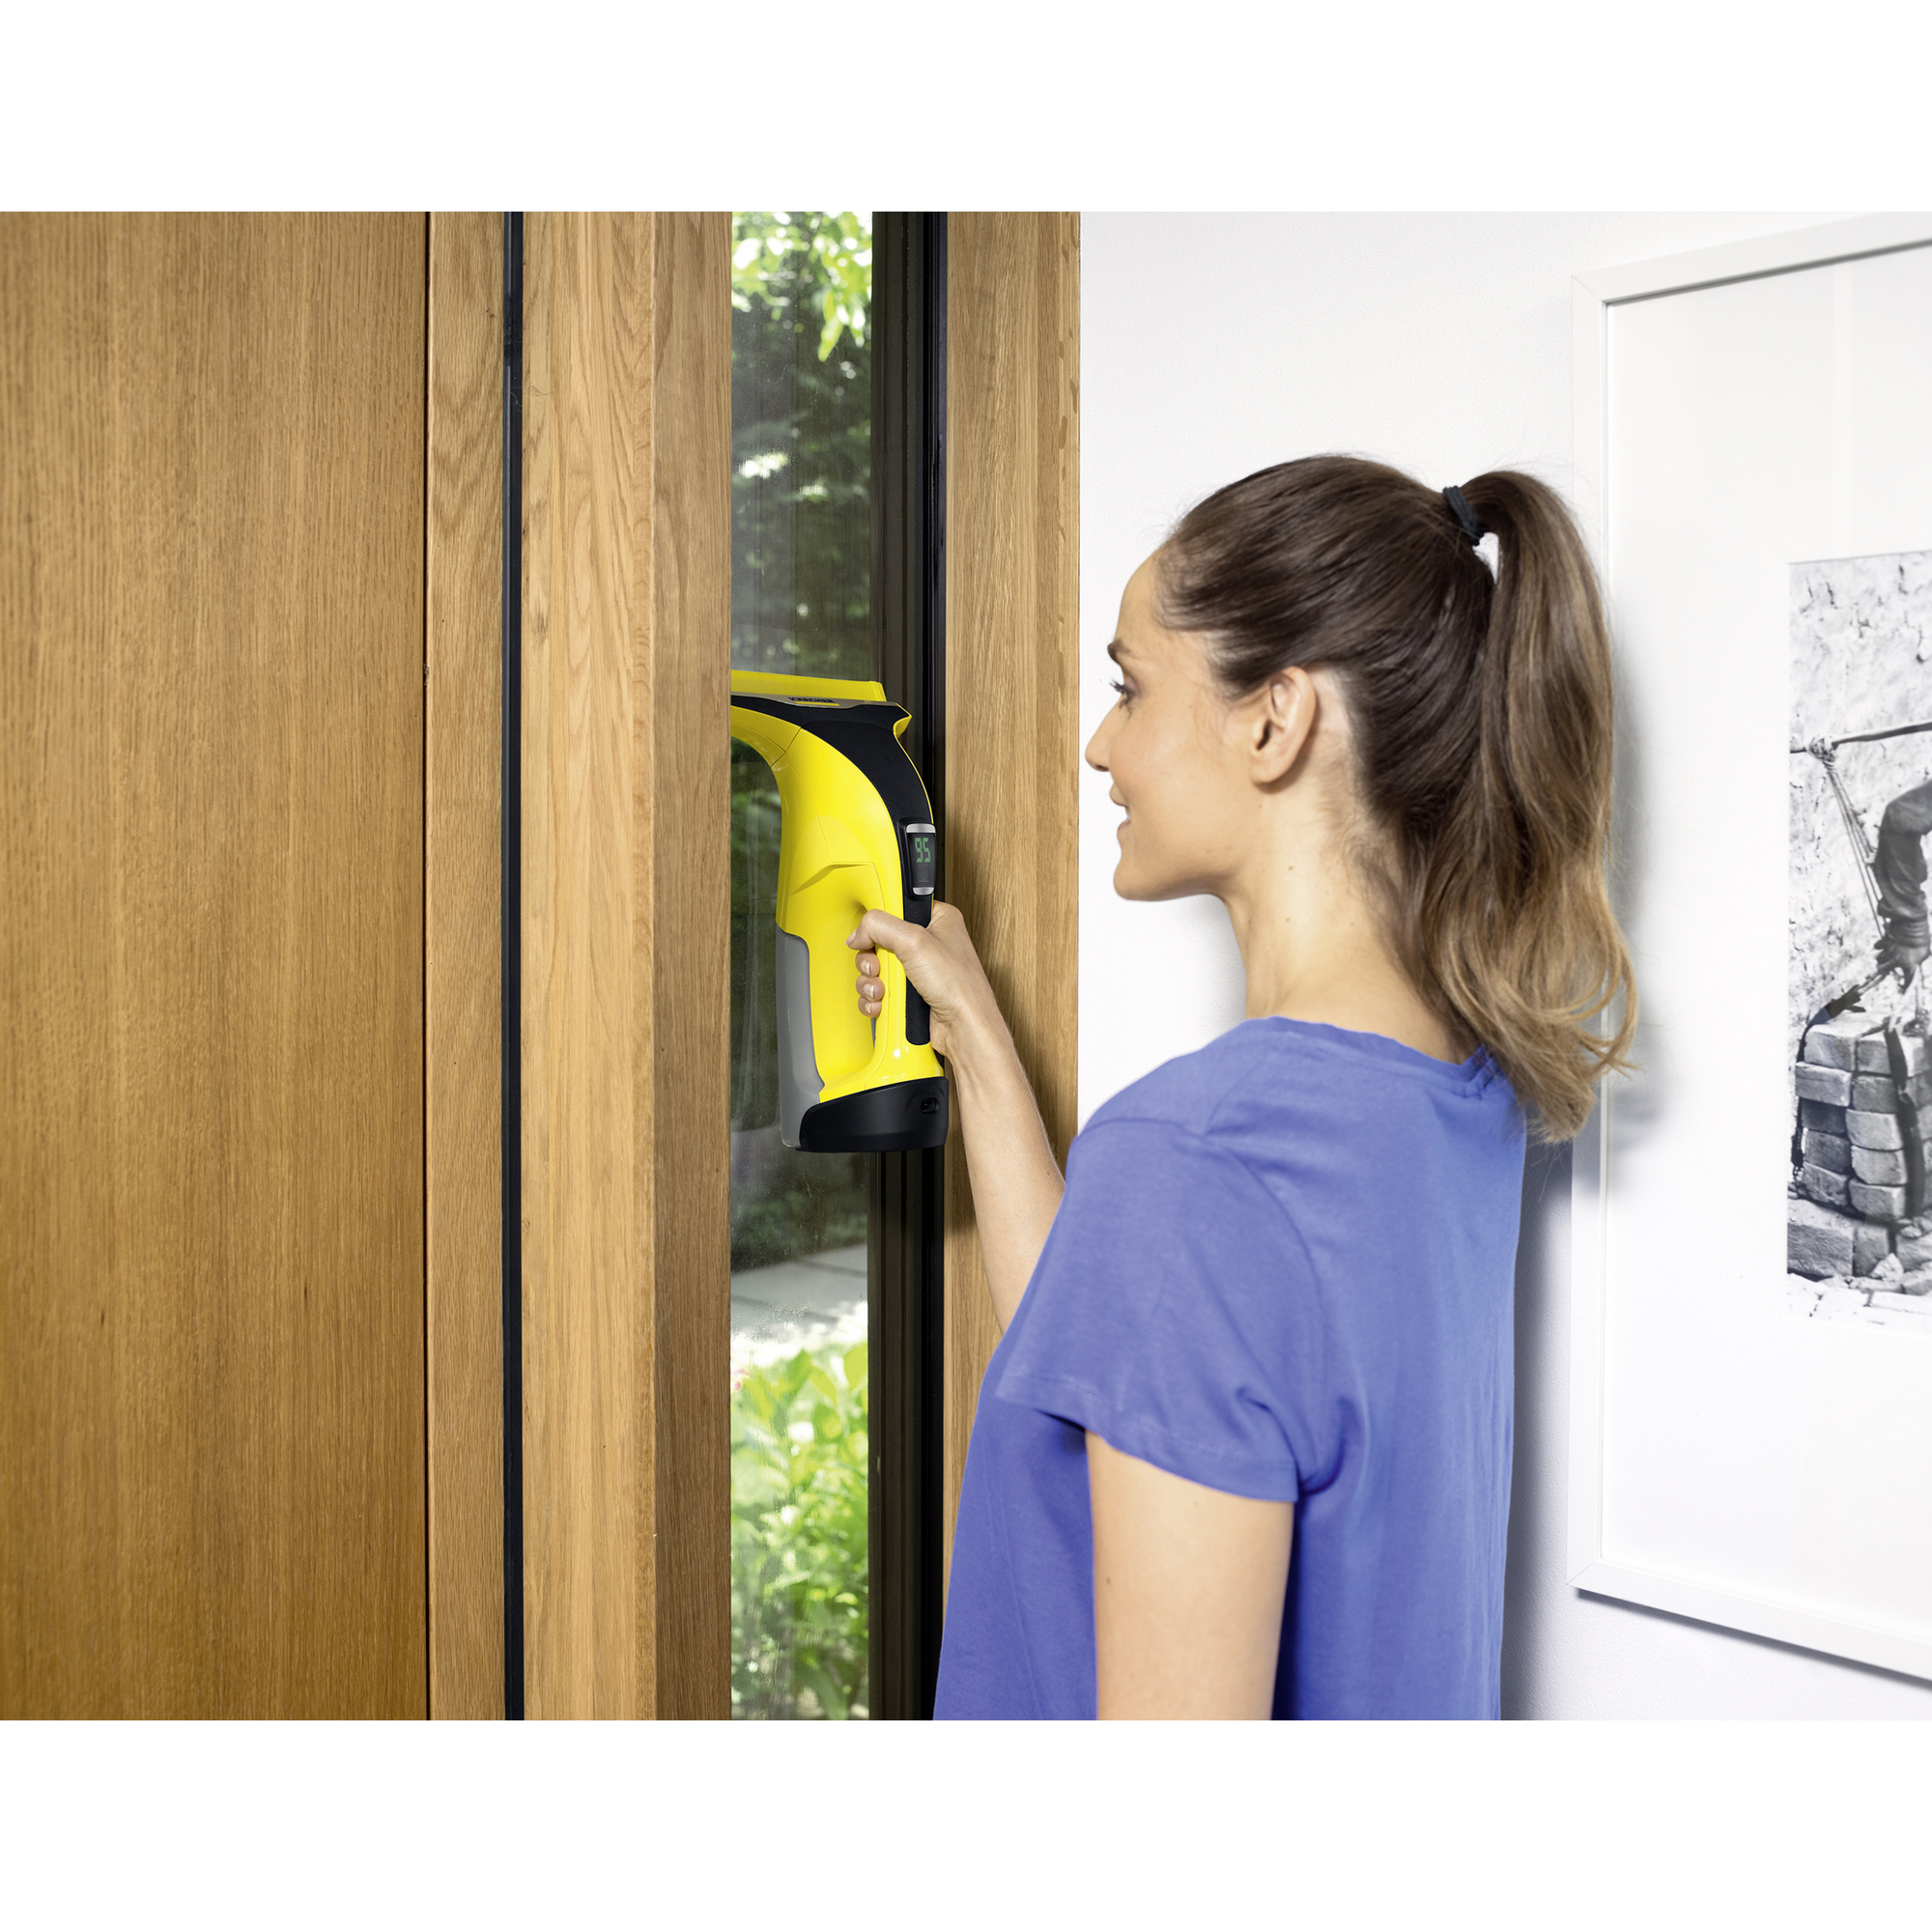 Absaugdüse für Fensterreiniger 'WV 6' schmal gelb 17 cm + product picture